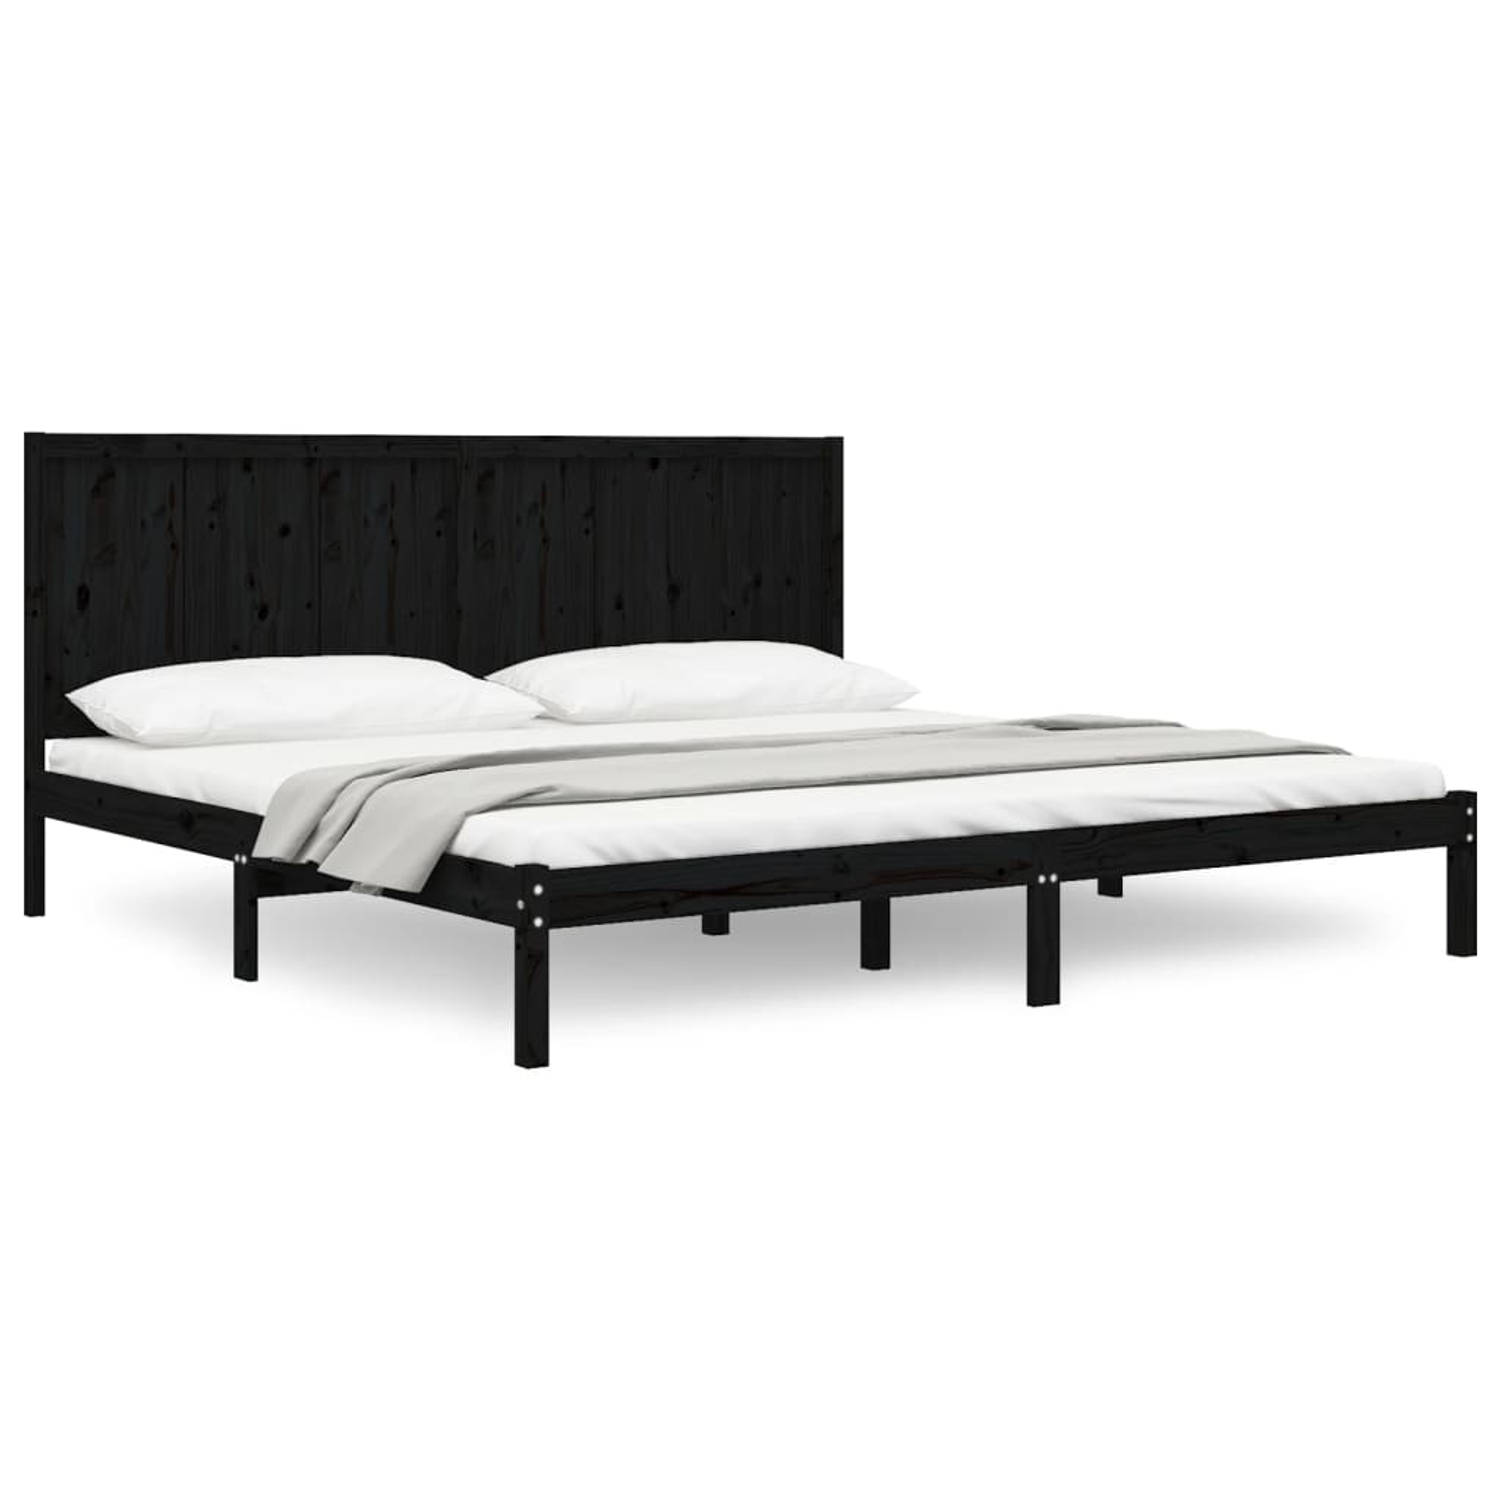 The Living Store Bedframe massief grenenhout zwart 180x200 cm 6FT Super King - Bedframe - Bedframes - Bed - Bedbodem - Ledikant - Bed Frame - Massief Houten Bedframe - Slaapmeubel